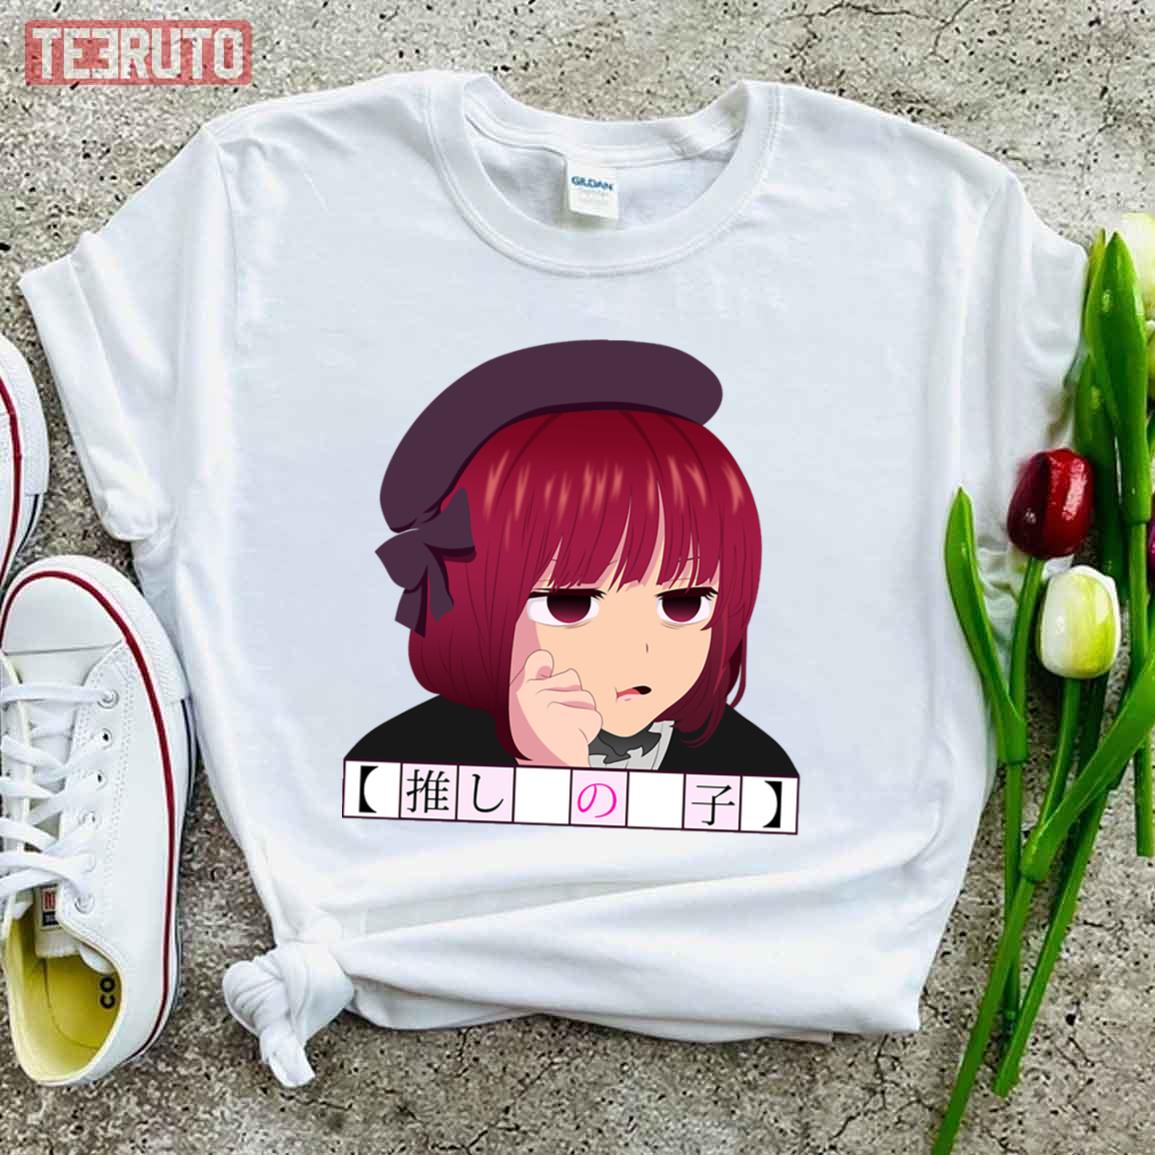 Red Short Hair Cute Girl Of Oshi No Ko Unisex T-Shirt